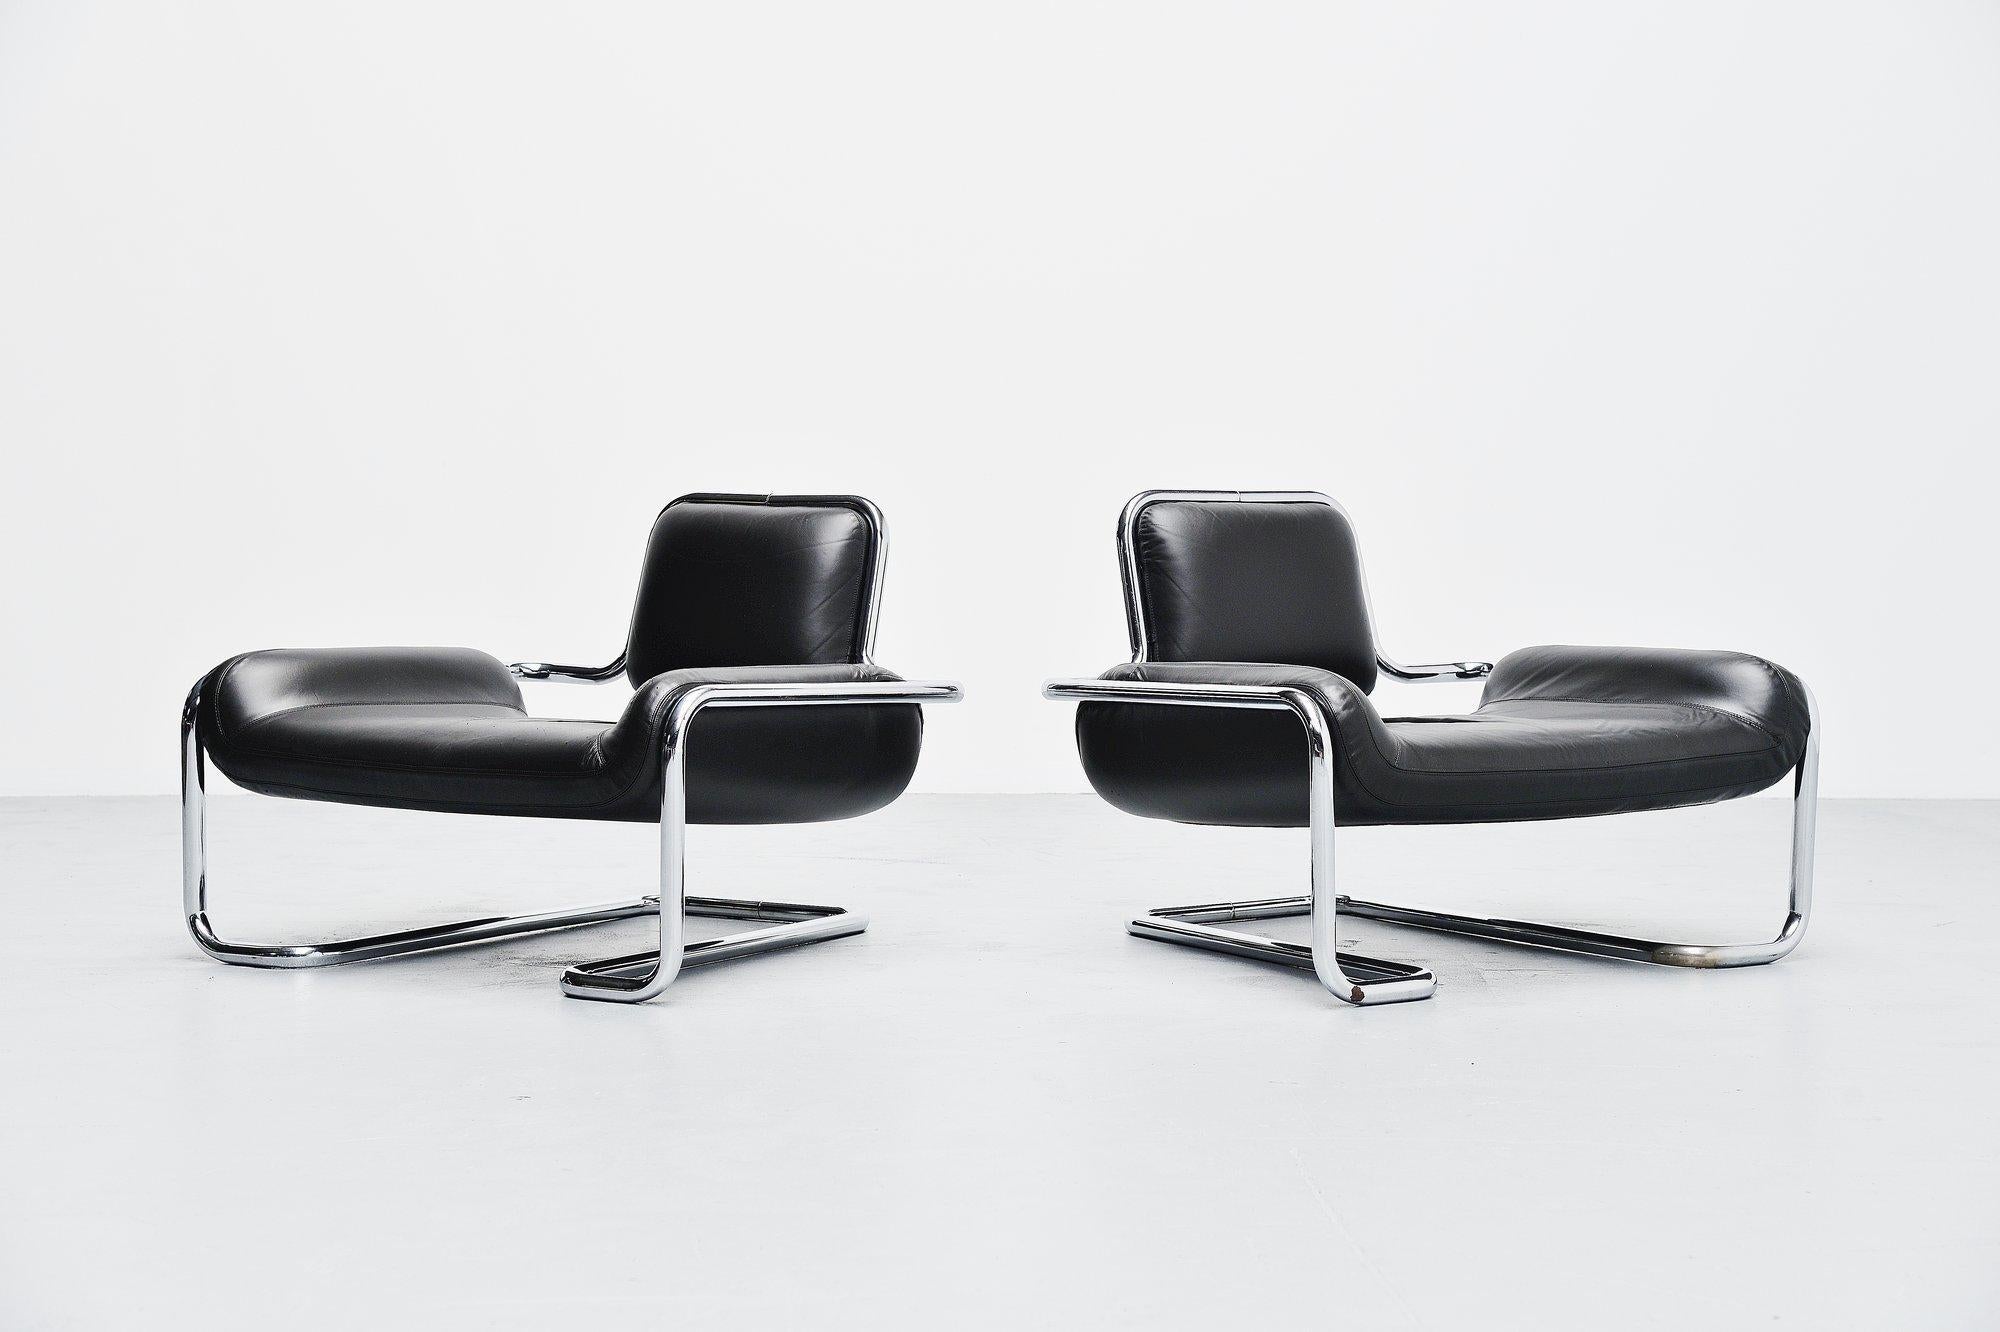 Rare paire de chaises longues basses conçues par Kwok Hoi Chan et fabriquées par Steiner:: France 1971. Ces chaises de salon aux formes fantastiques sont dotées d'une épaisse structure en métal tubulaire chromé et d'un siège rembourré en cuir noir.